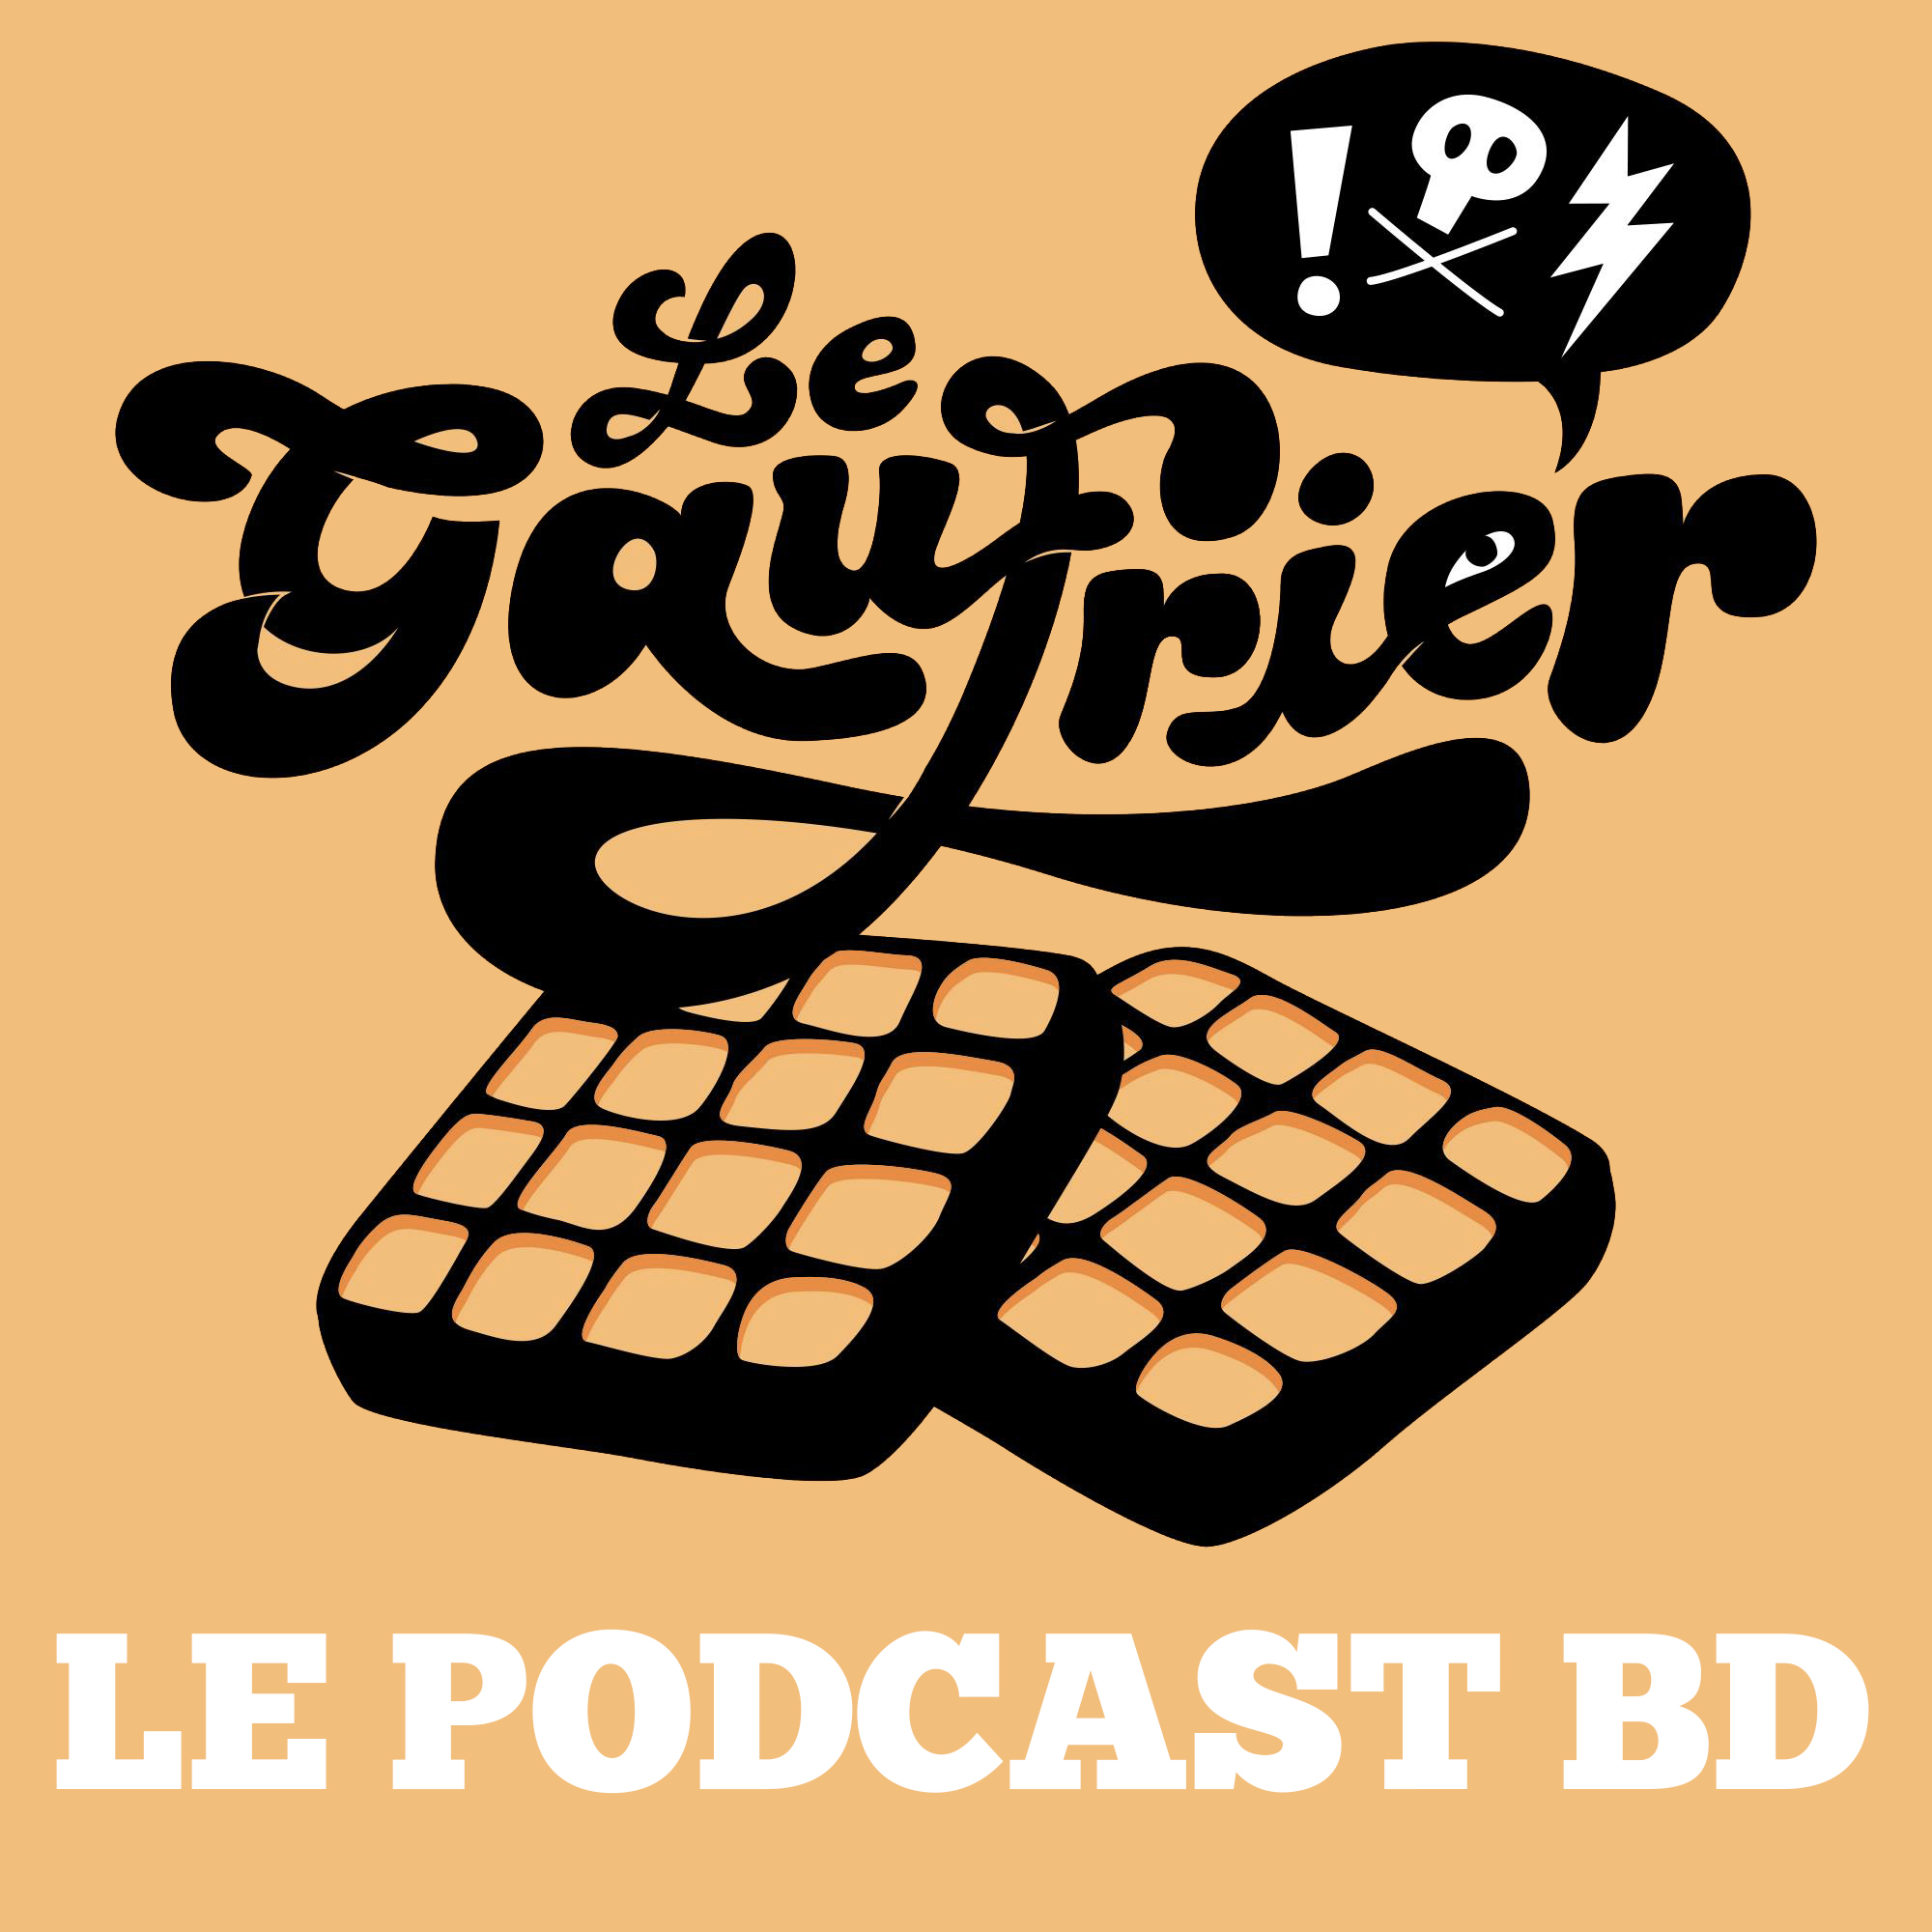 (c) Legaufrierpodcast.fr